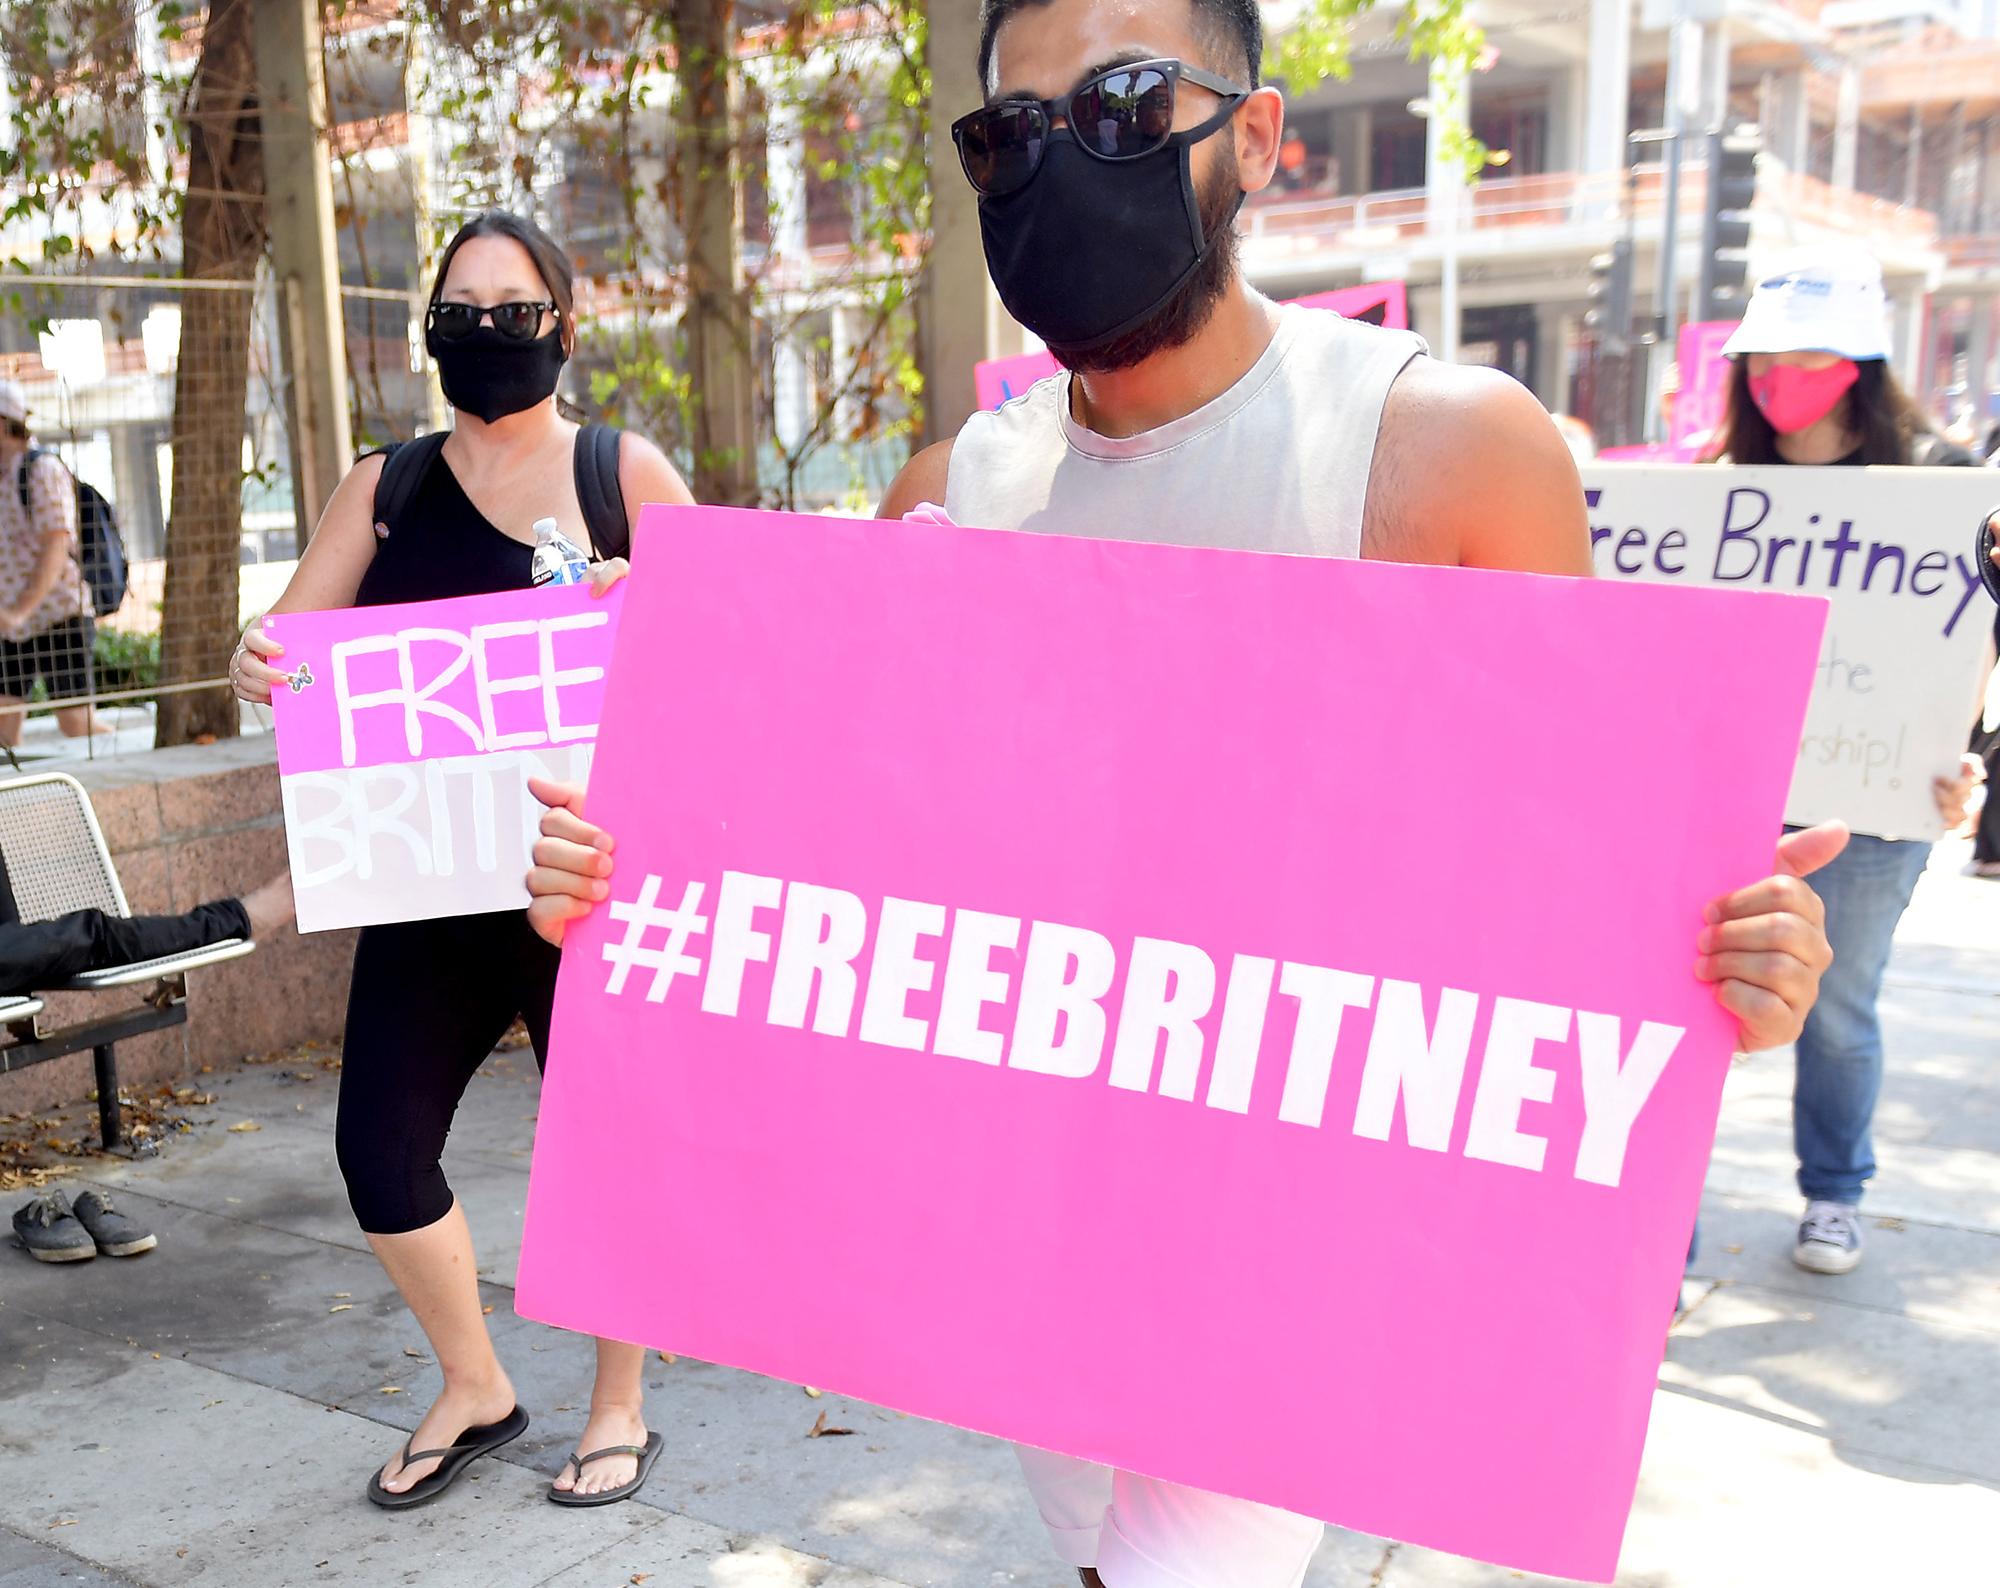 Le 19 août 2020, des membres du mouvement #FreeBritney manifestent devant le tribunal où se tient une audience pour réévaluer la tutelle de Britney Spears. [AFP - Matt Winkelmeyer]